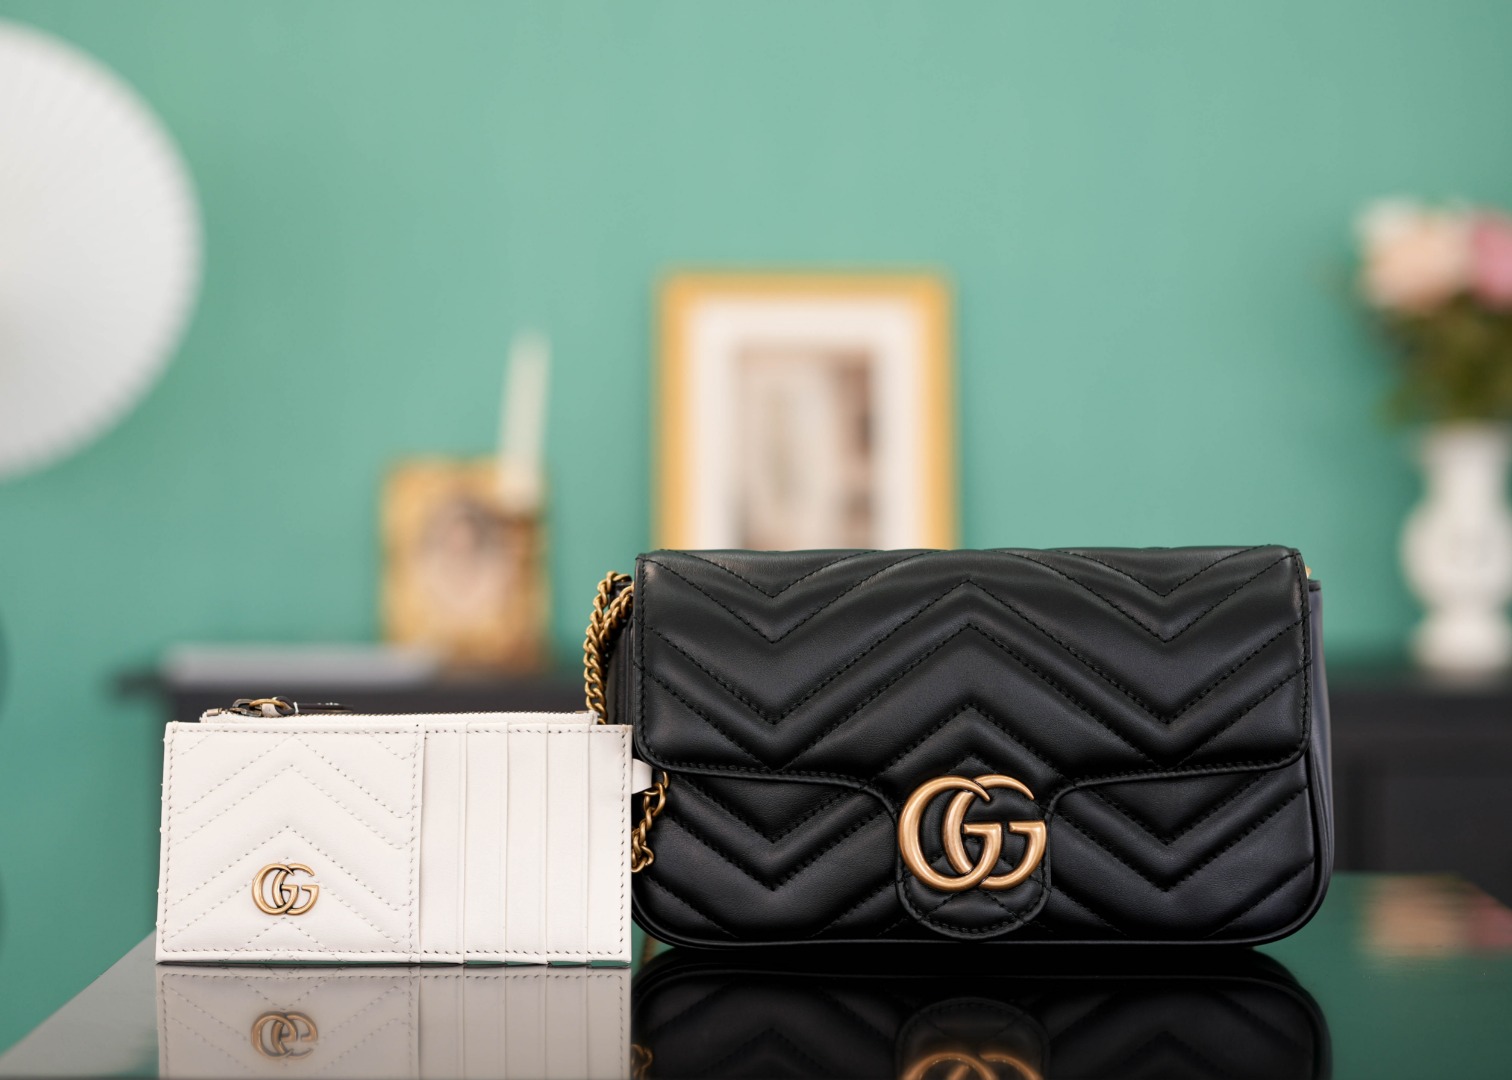 正品级GGMarmont系列链条包配卡包黑色21cm原厂皮全铜五金正品售价124,800独家原厂皮发售限